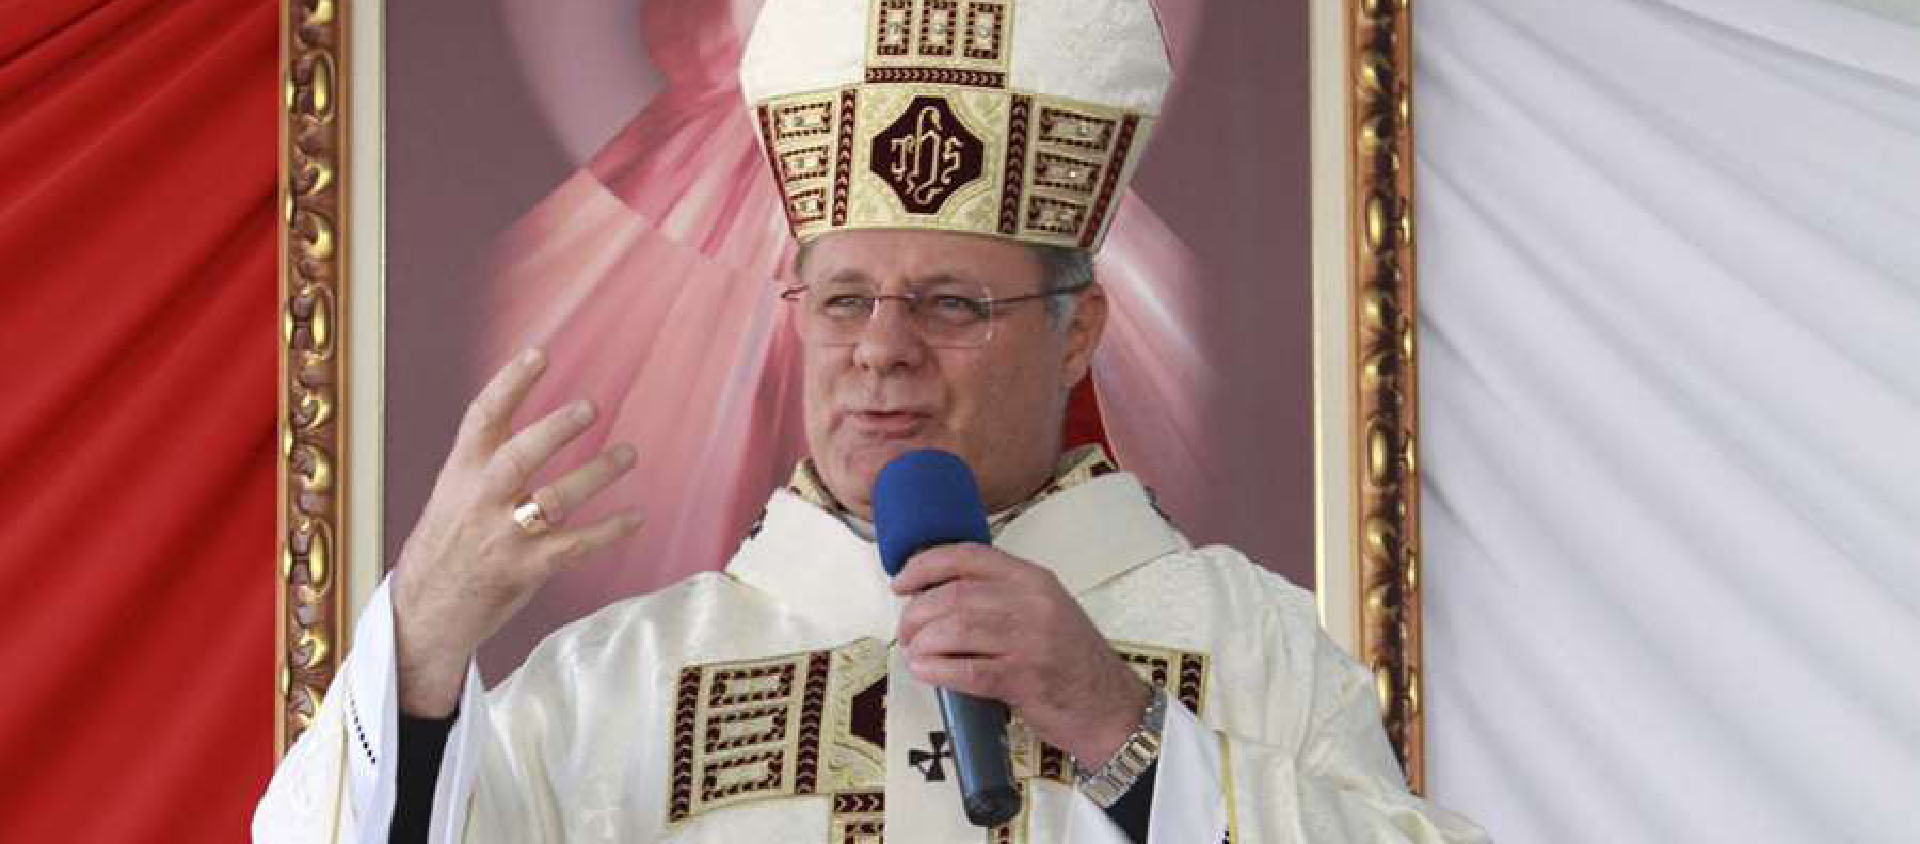 «Une surprise totale», a reconnu le futur cardinal à propos de l’annonce | © Archidiocèse de Brasilia